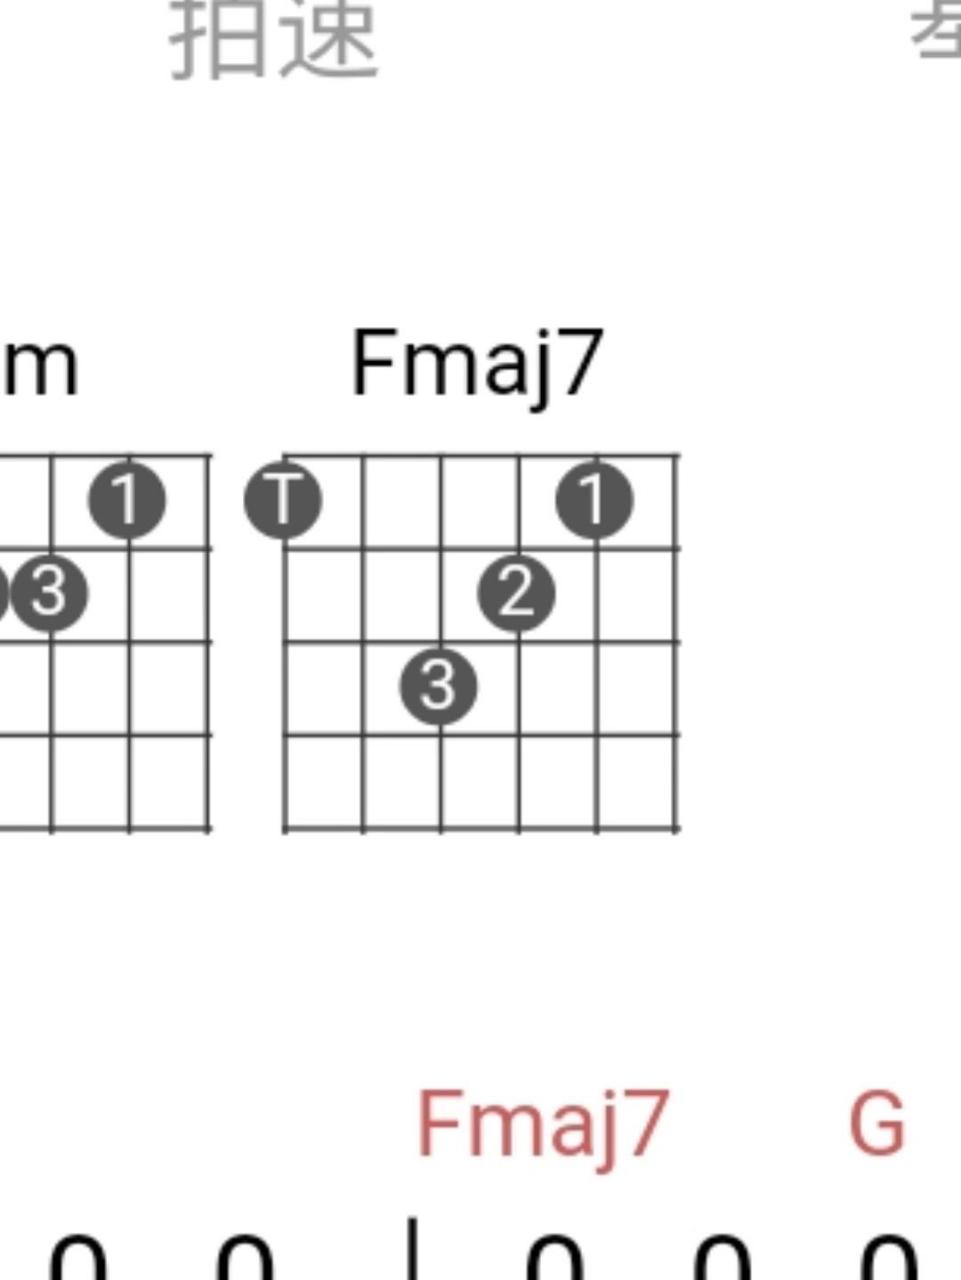 不懂就问:fmaj7和弦怎么弹 手太短,大拇指按不到6弦,按到也压不紧,弹